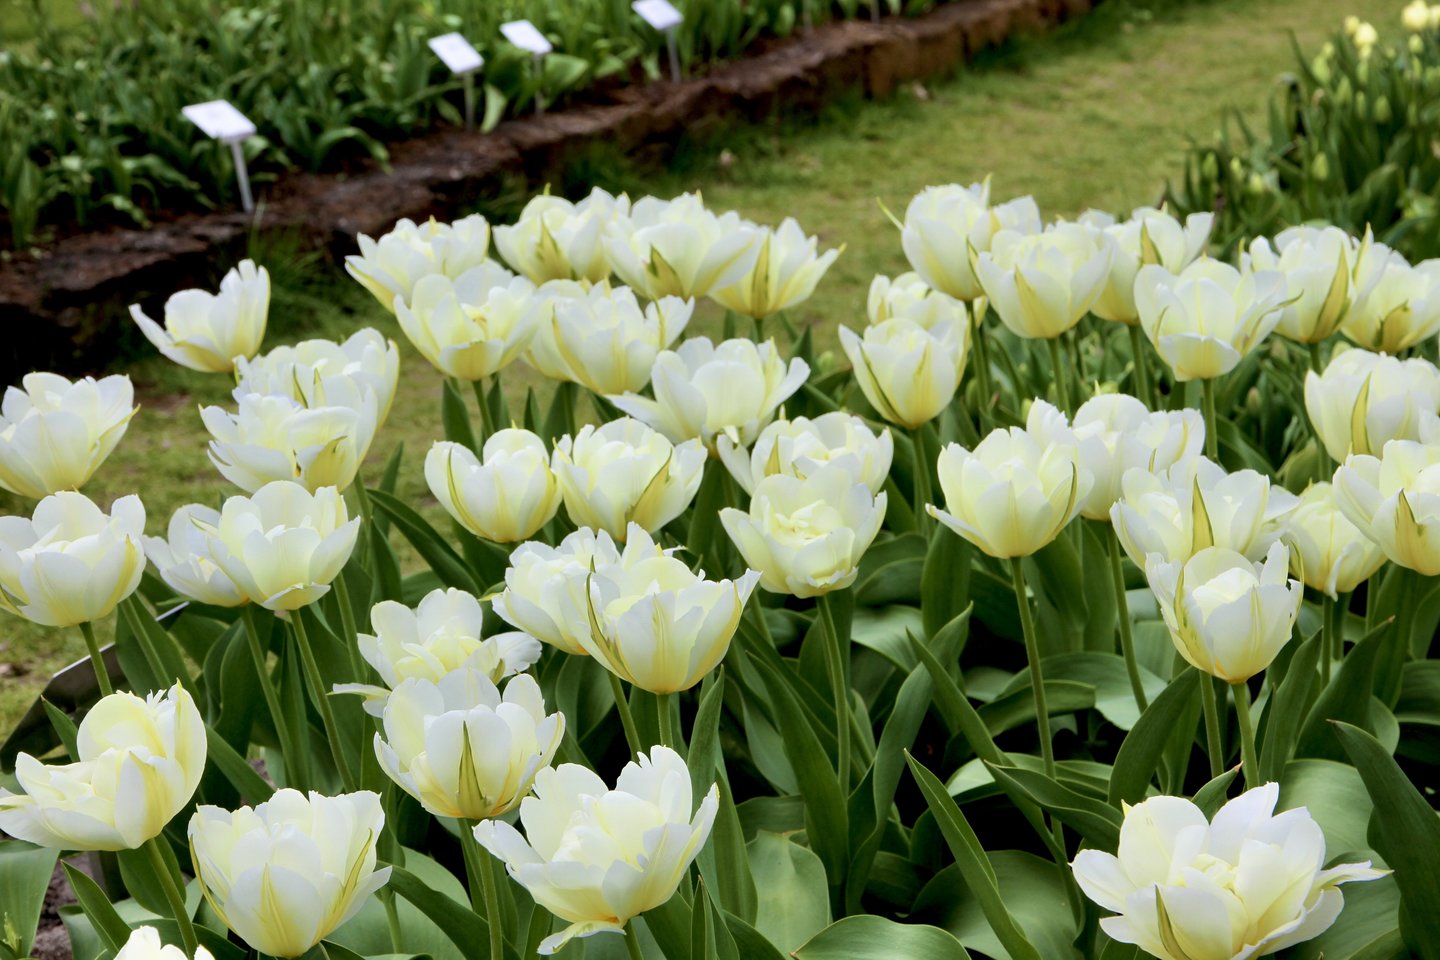 VDU Botanikos sode iš viso pasodinta per 400 tulpių rūšių ir veislių.<br>VDU Botanikos sodo nuotr. 